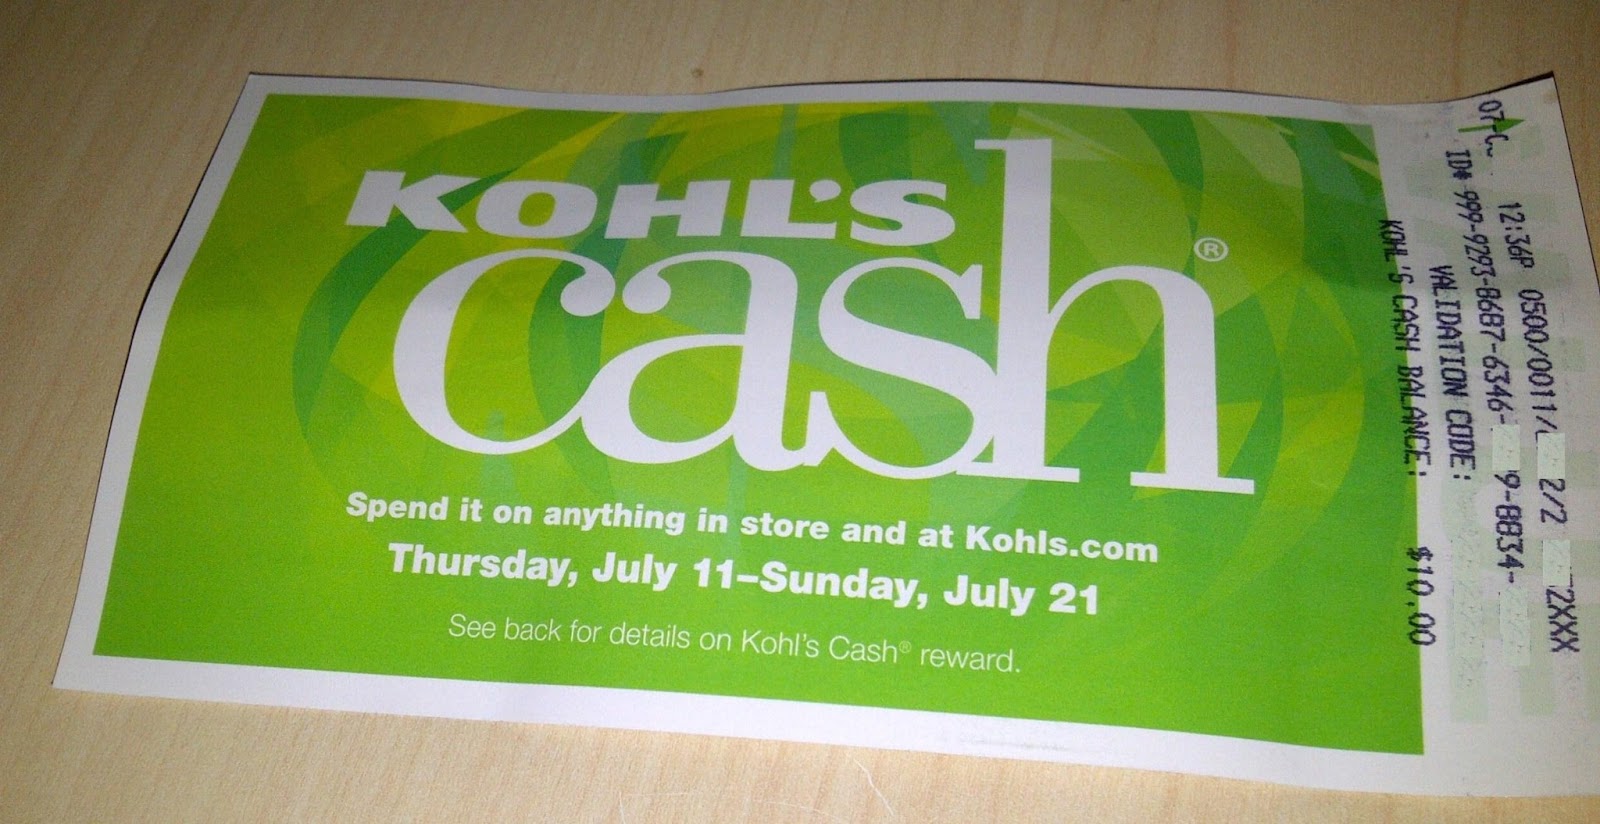 Kohlâs Credit Card: Get Kohlâs Cash and Kohl's Discounts | Penny ...